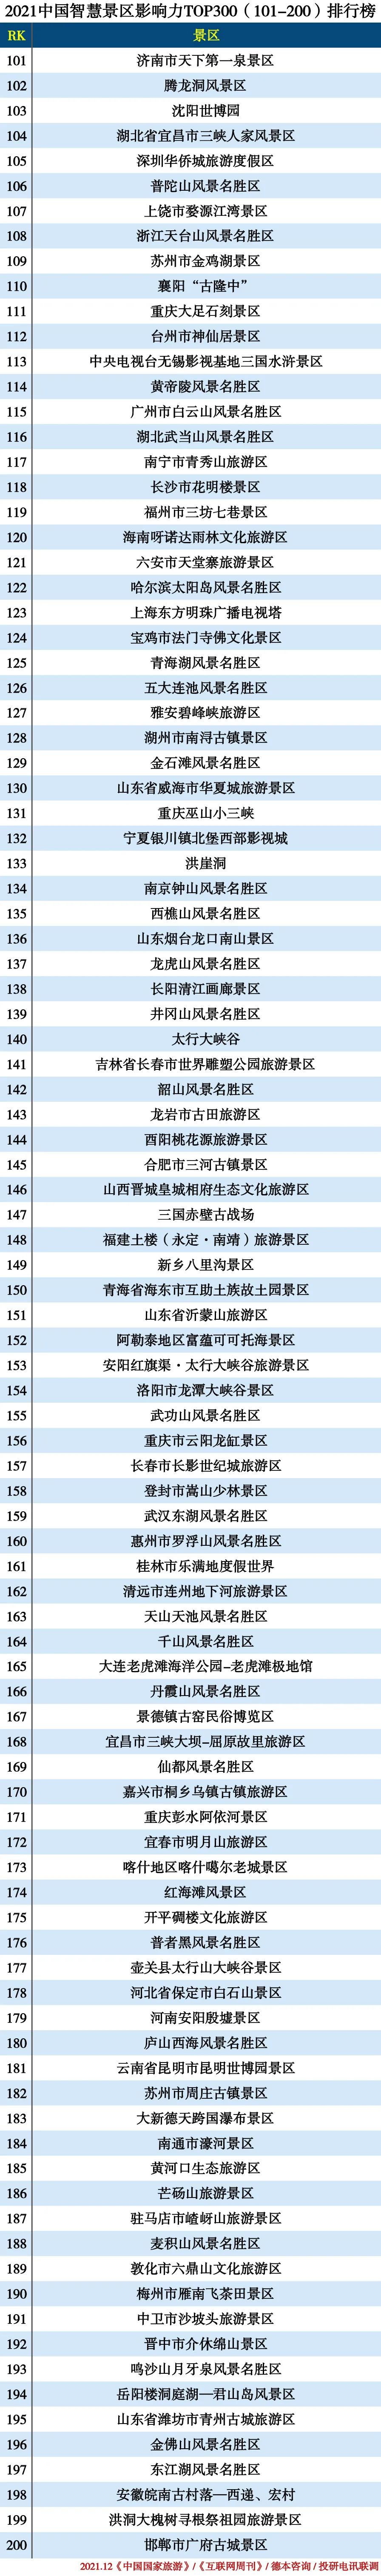 2021中国智慧景区TOP300—101-200.jpg